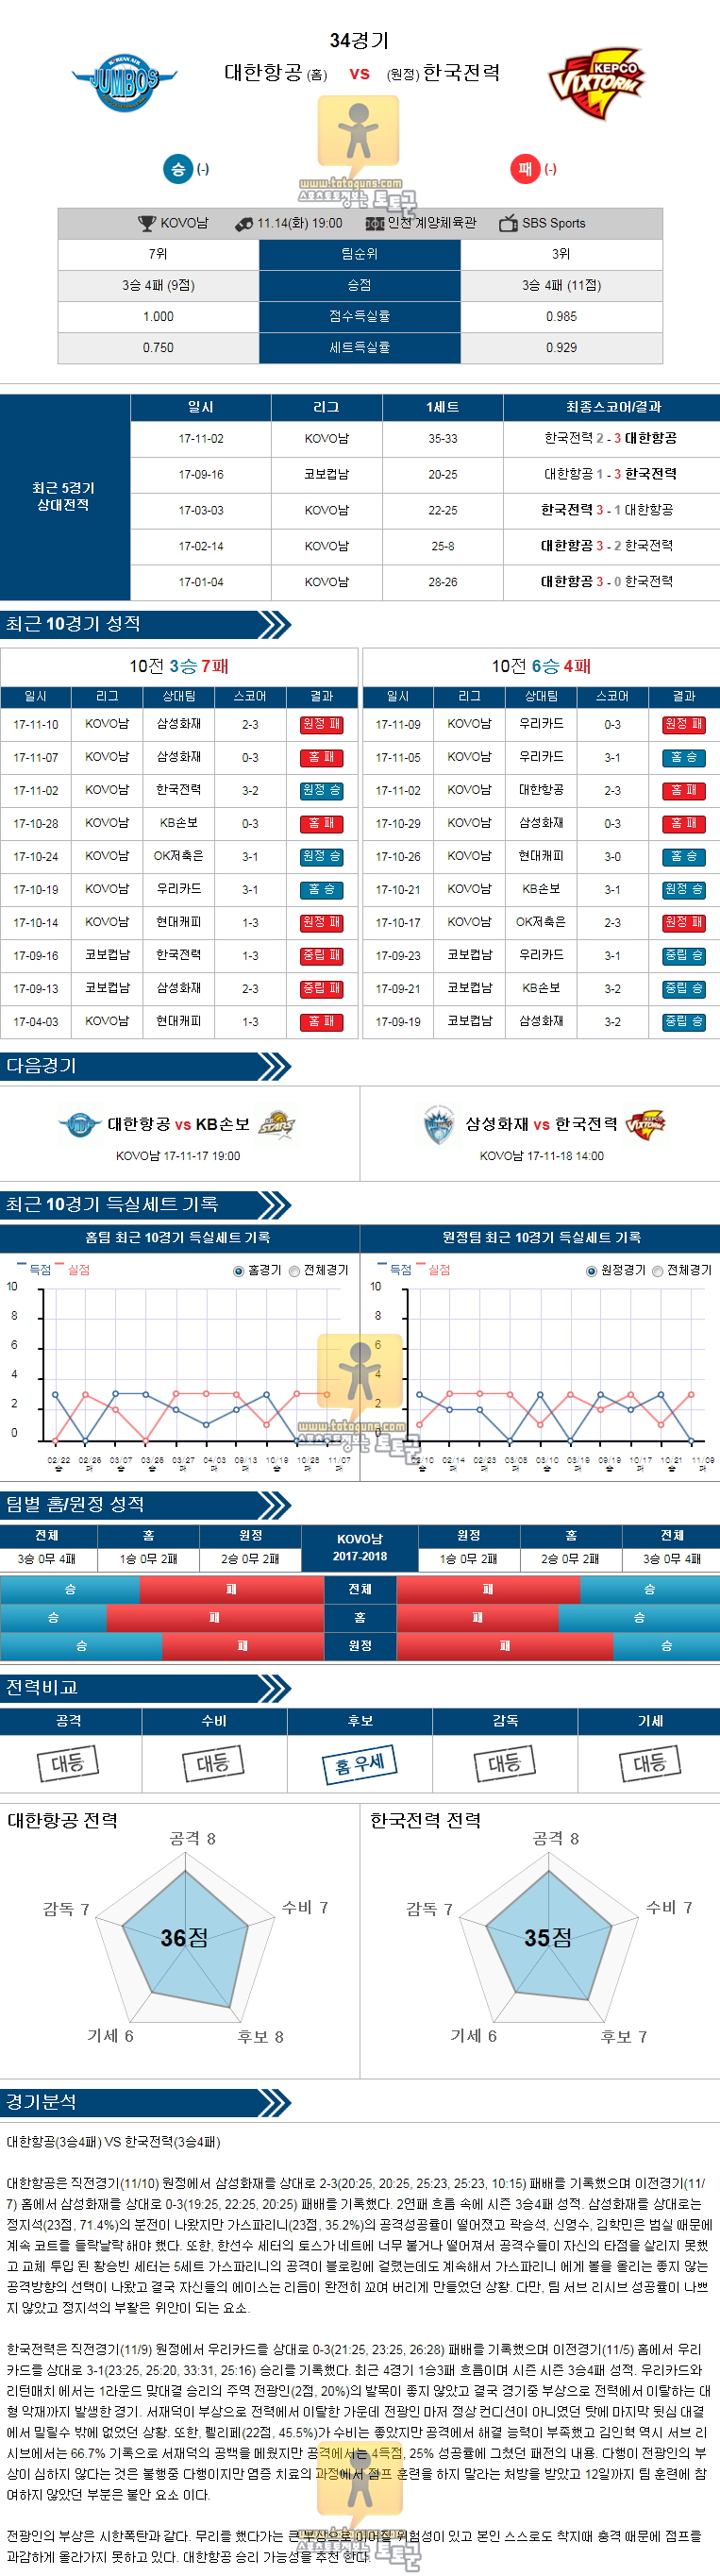 [KOVO] 11월 14일 19:00 남자프로배구분석 대한항공 vs 한국전력